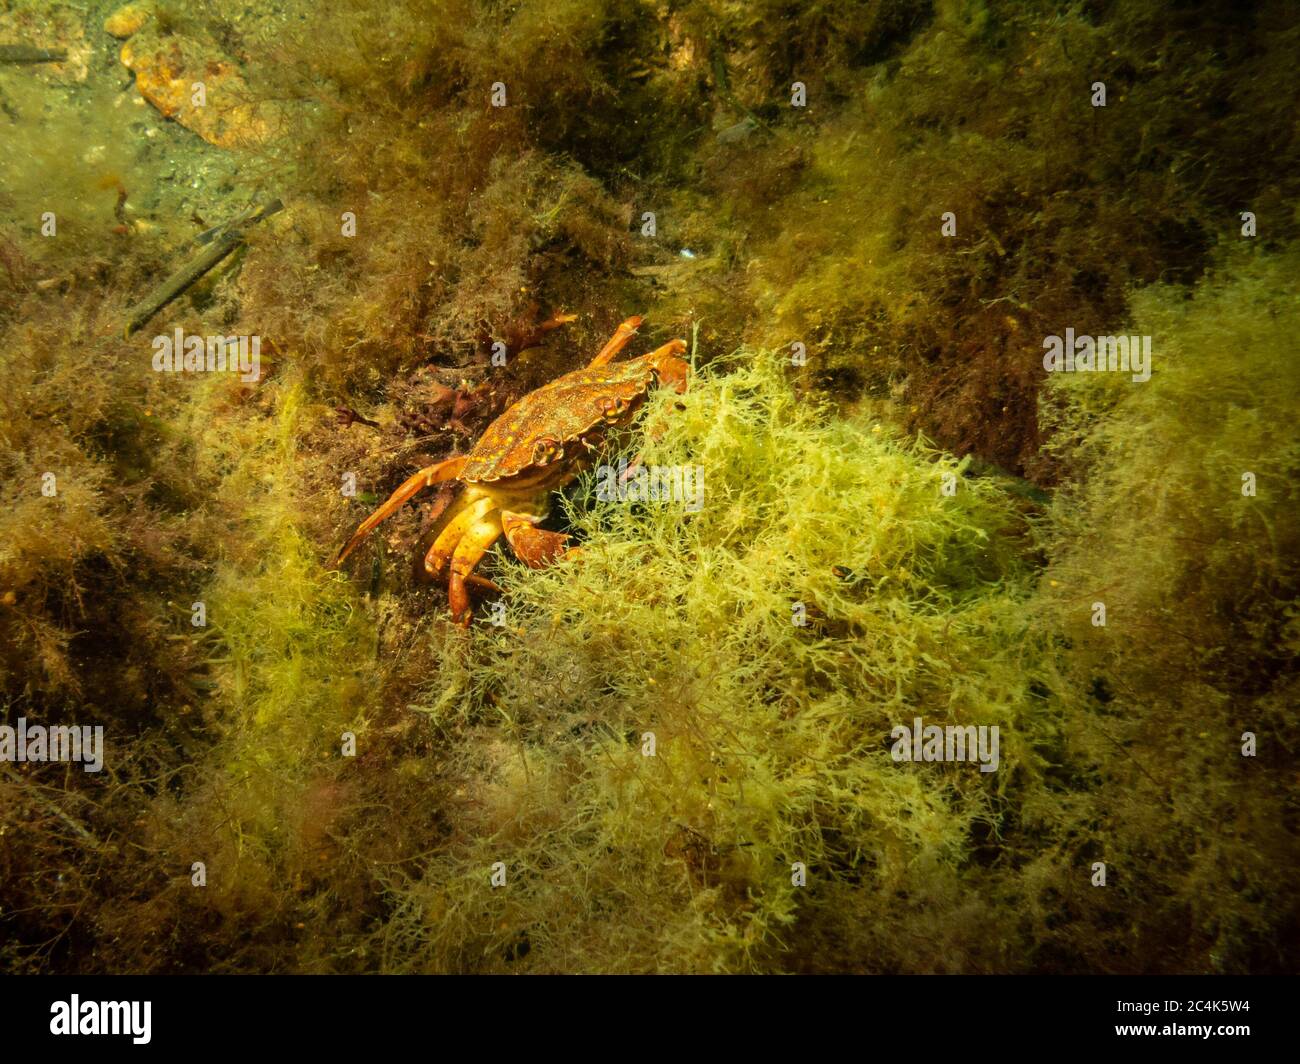 Un crabe photographié dans une plongée en bord de mer à on, Limhamn, Malmo. Plongée sous-marine à Oresund, l'eau entre la Suède et le Danemark. Photo de haute qualité Banque D'Images